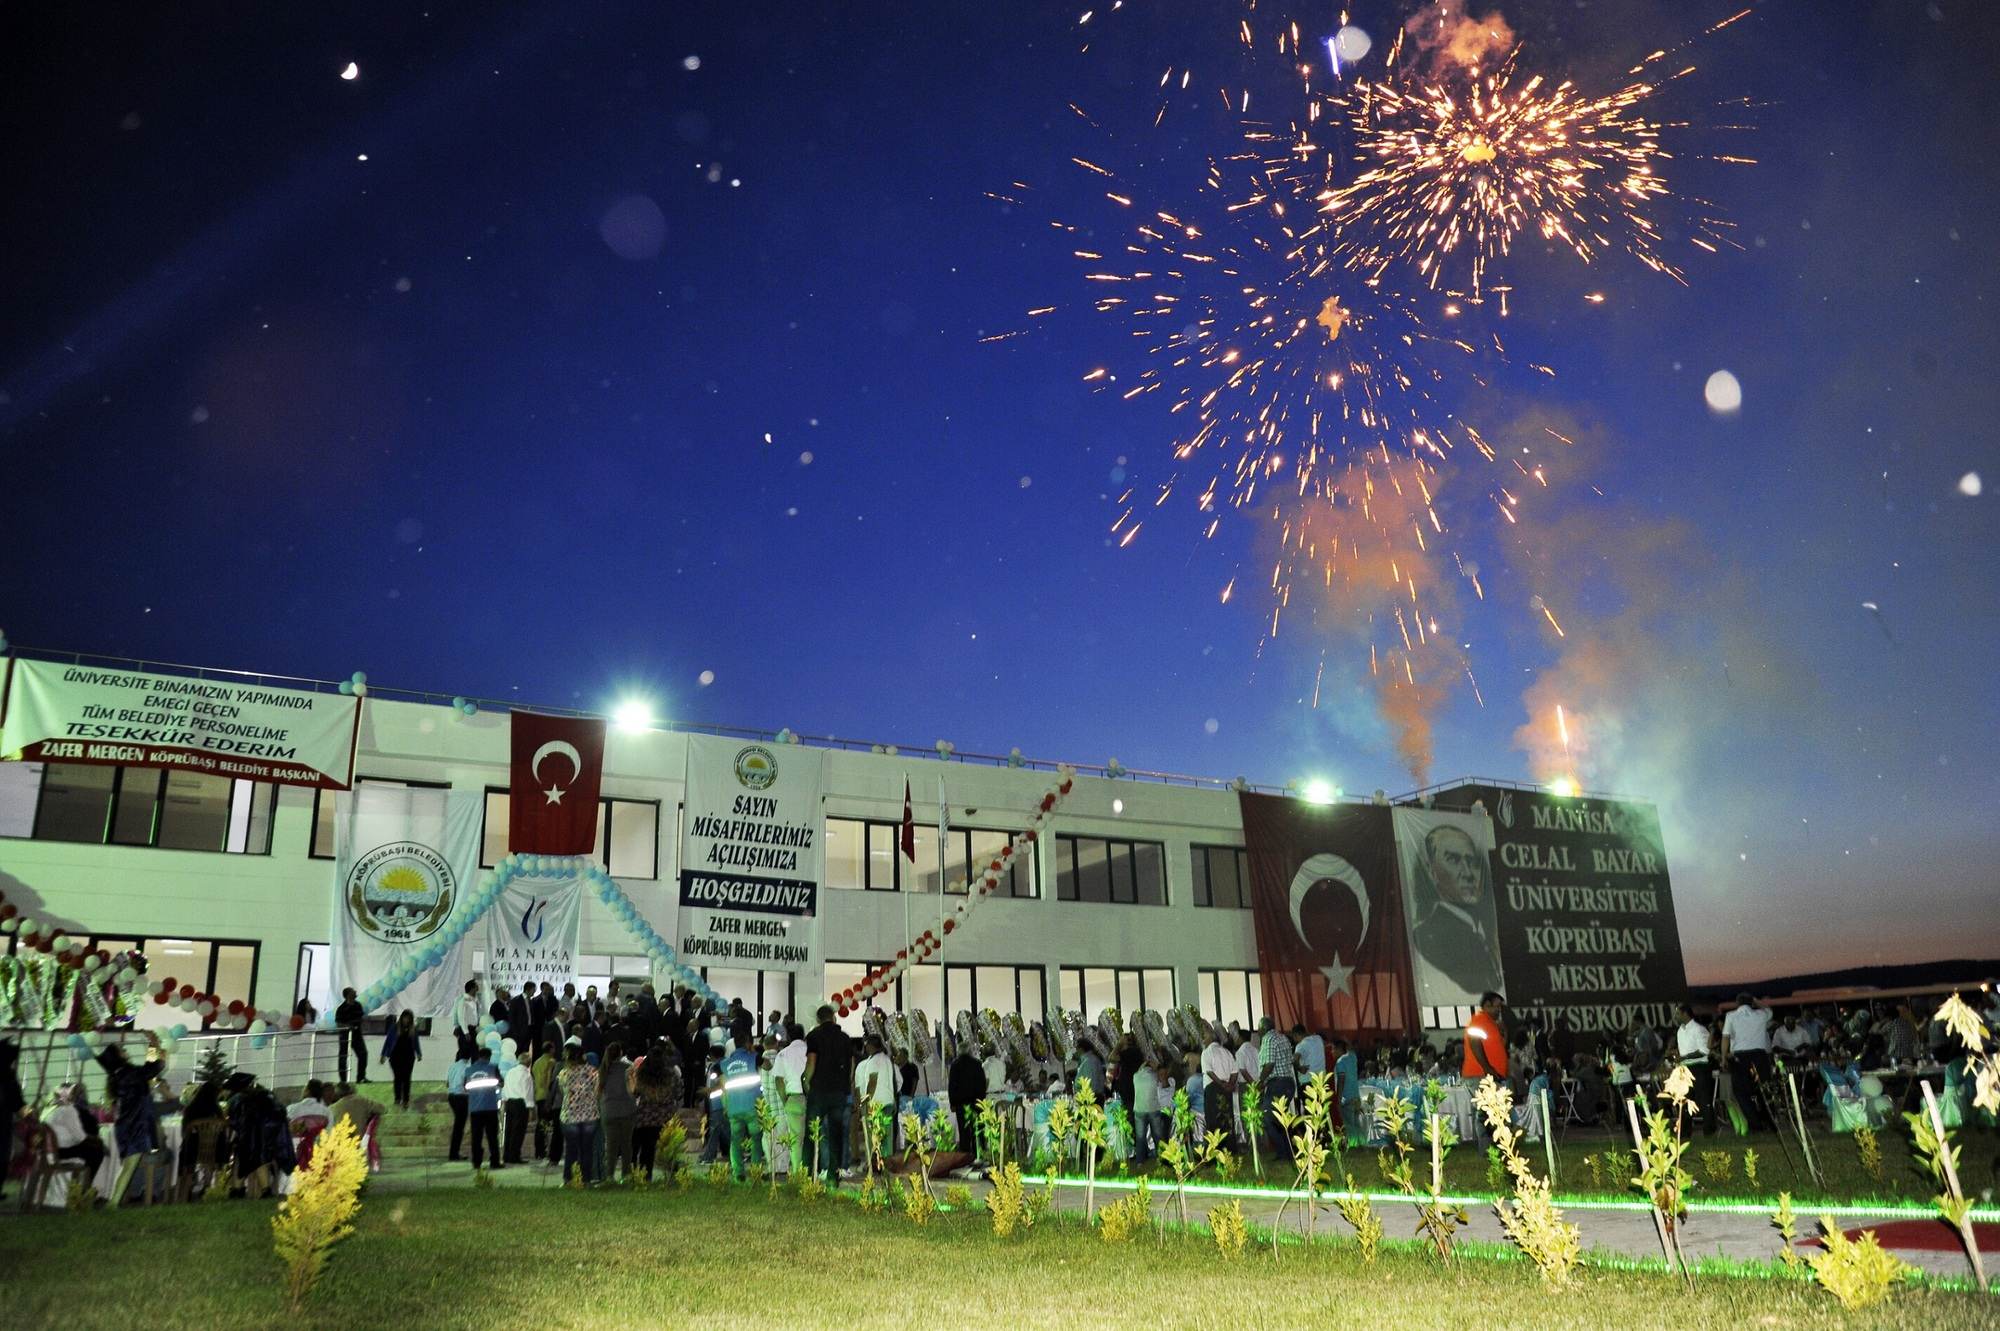 Manisa Celal Bayar Üniversitesi Köprübaşı Meslek Yüksekokulu